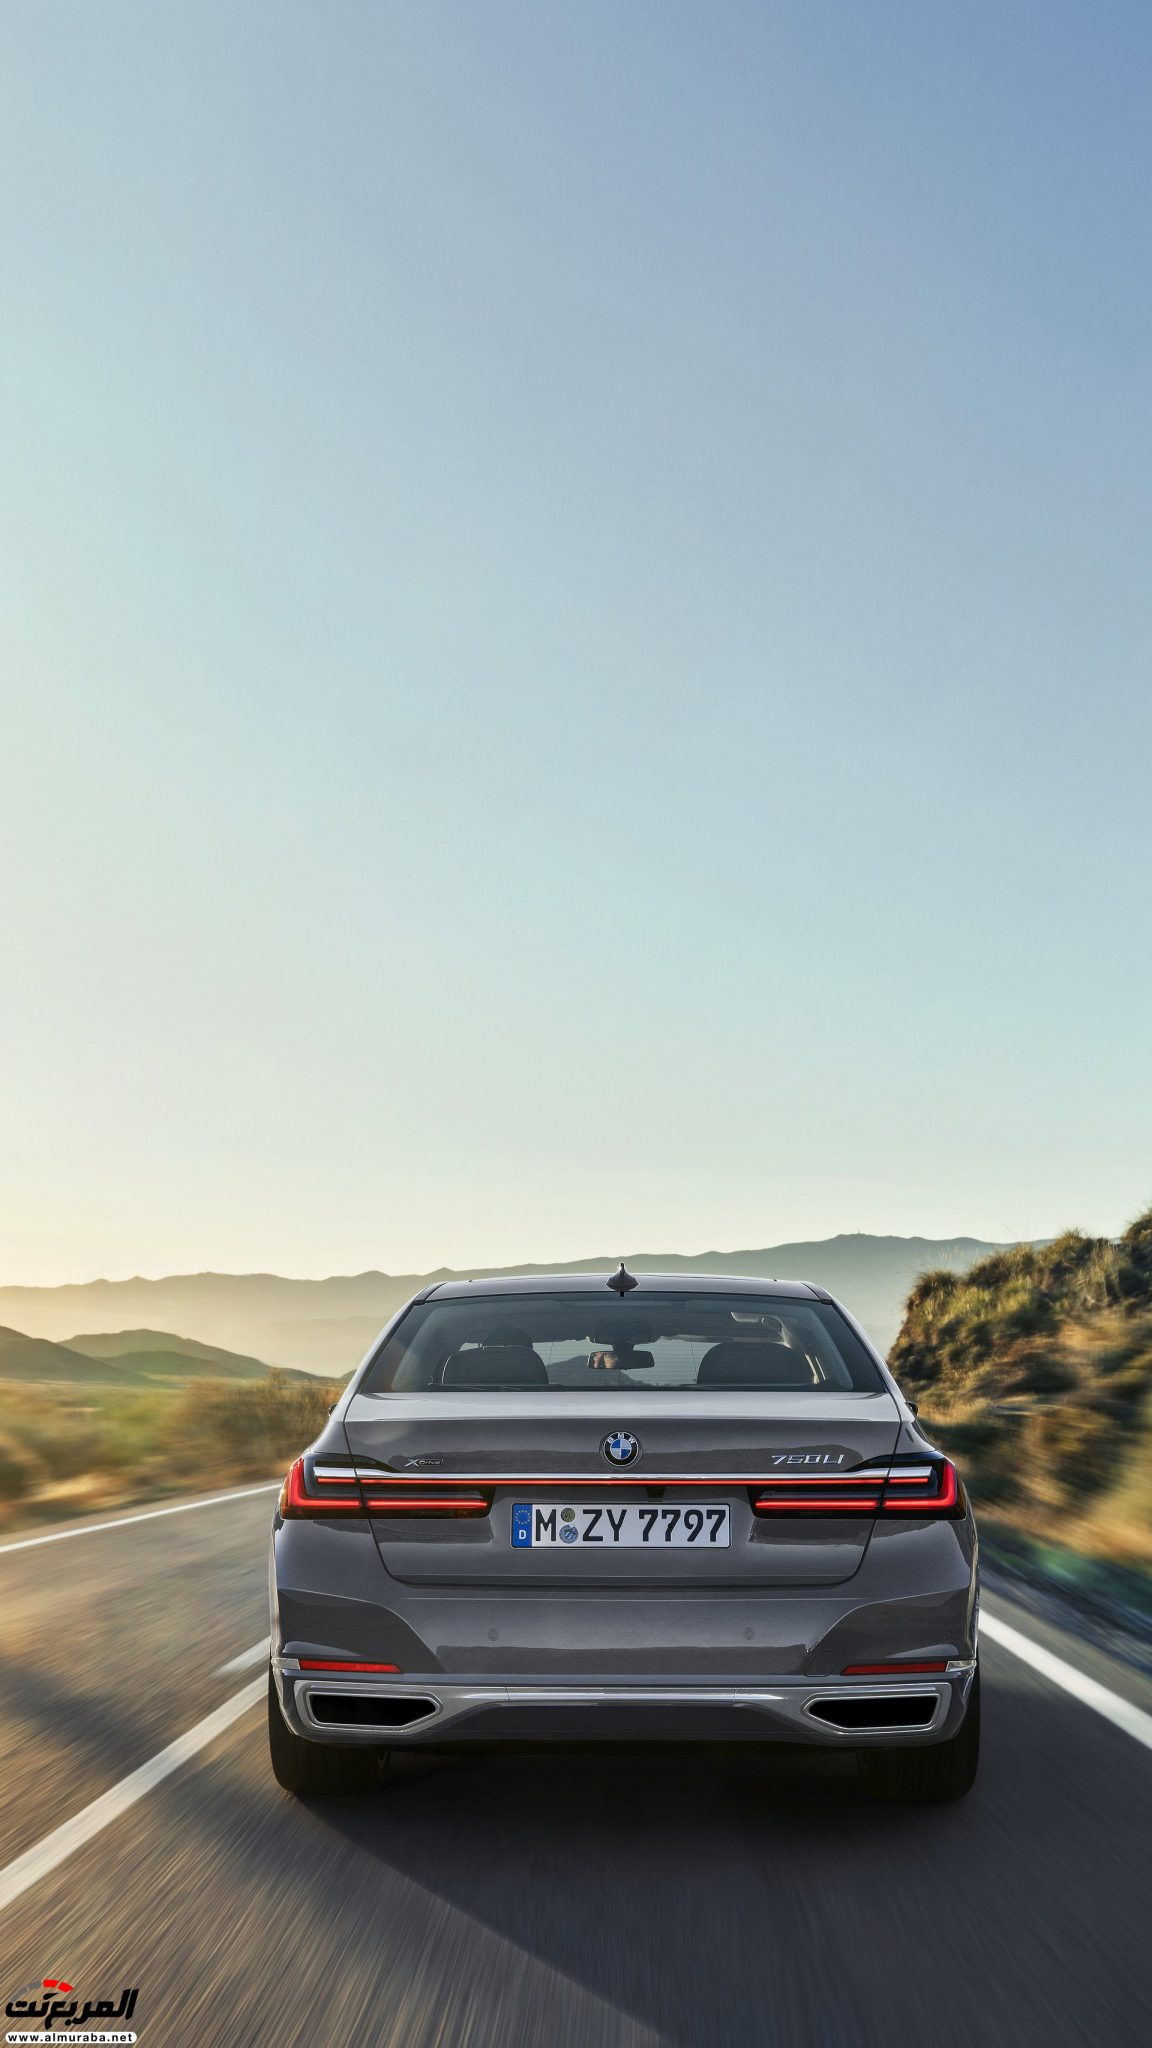 بي ام دبليو الفئة السابعة 2020 المحدثة تكشف نفسها رسمياً "صور ومواصفات" BMW 7 Series 304